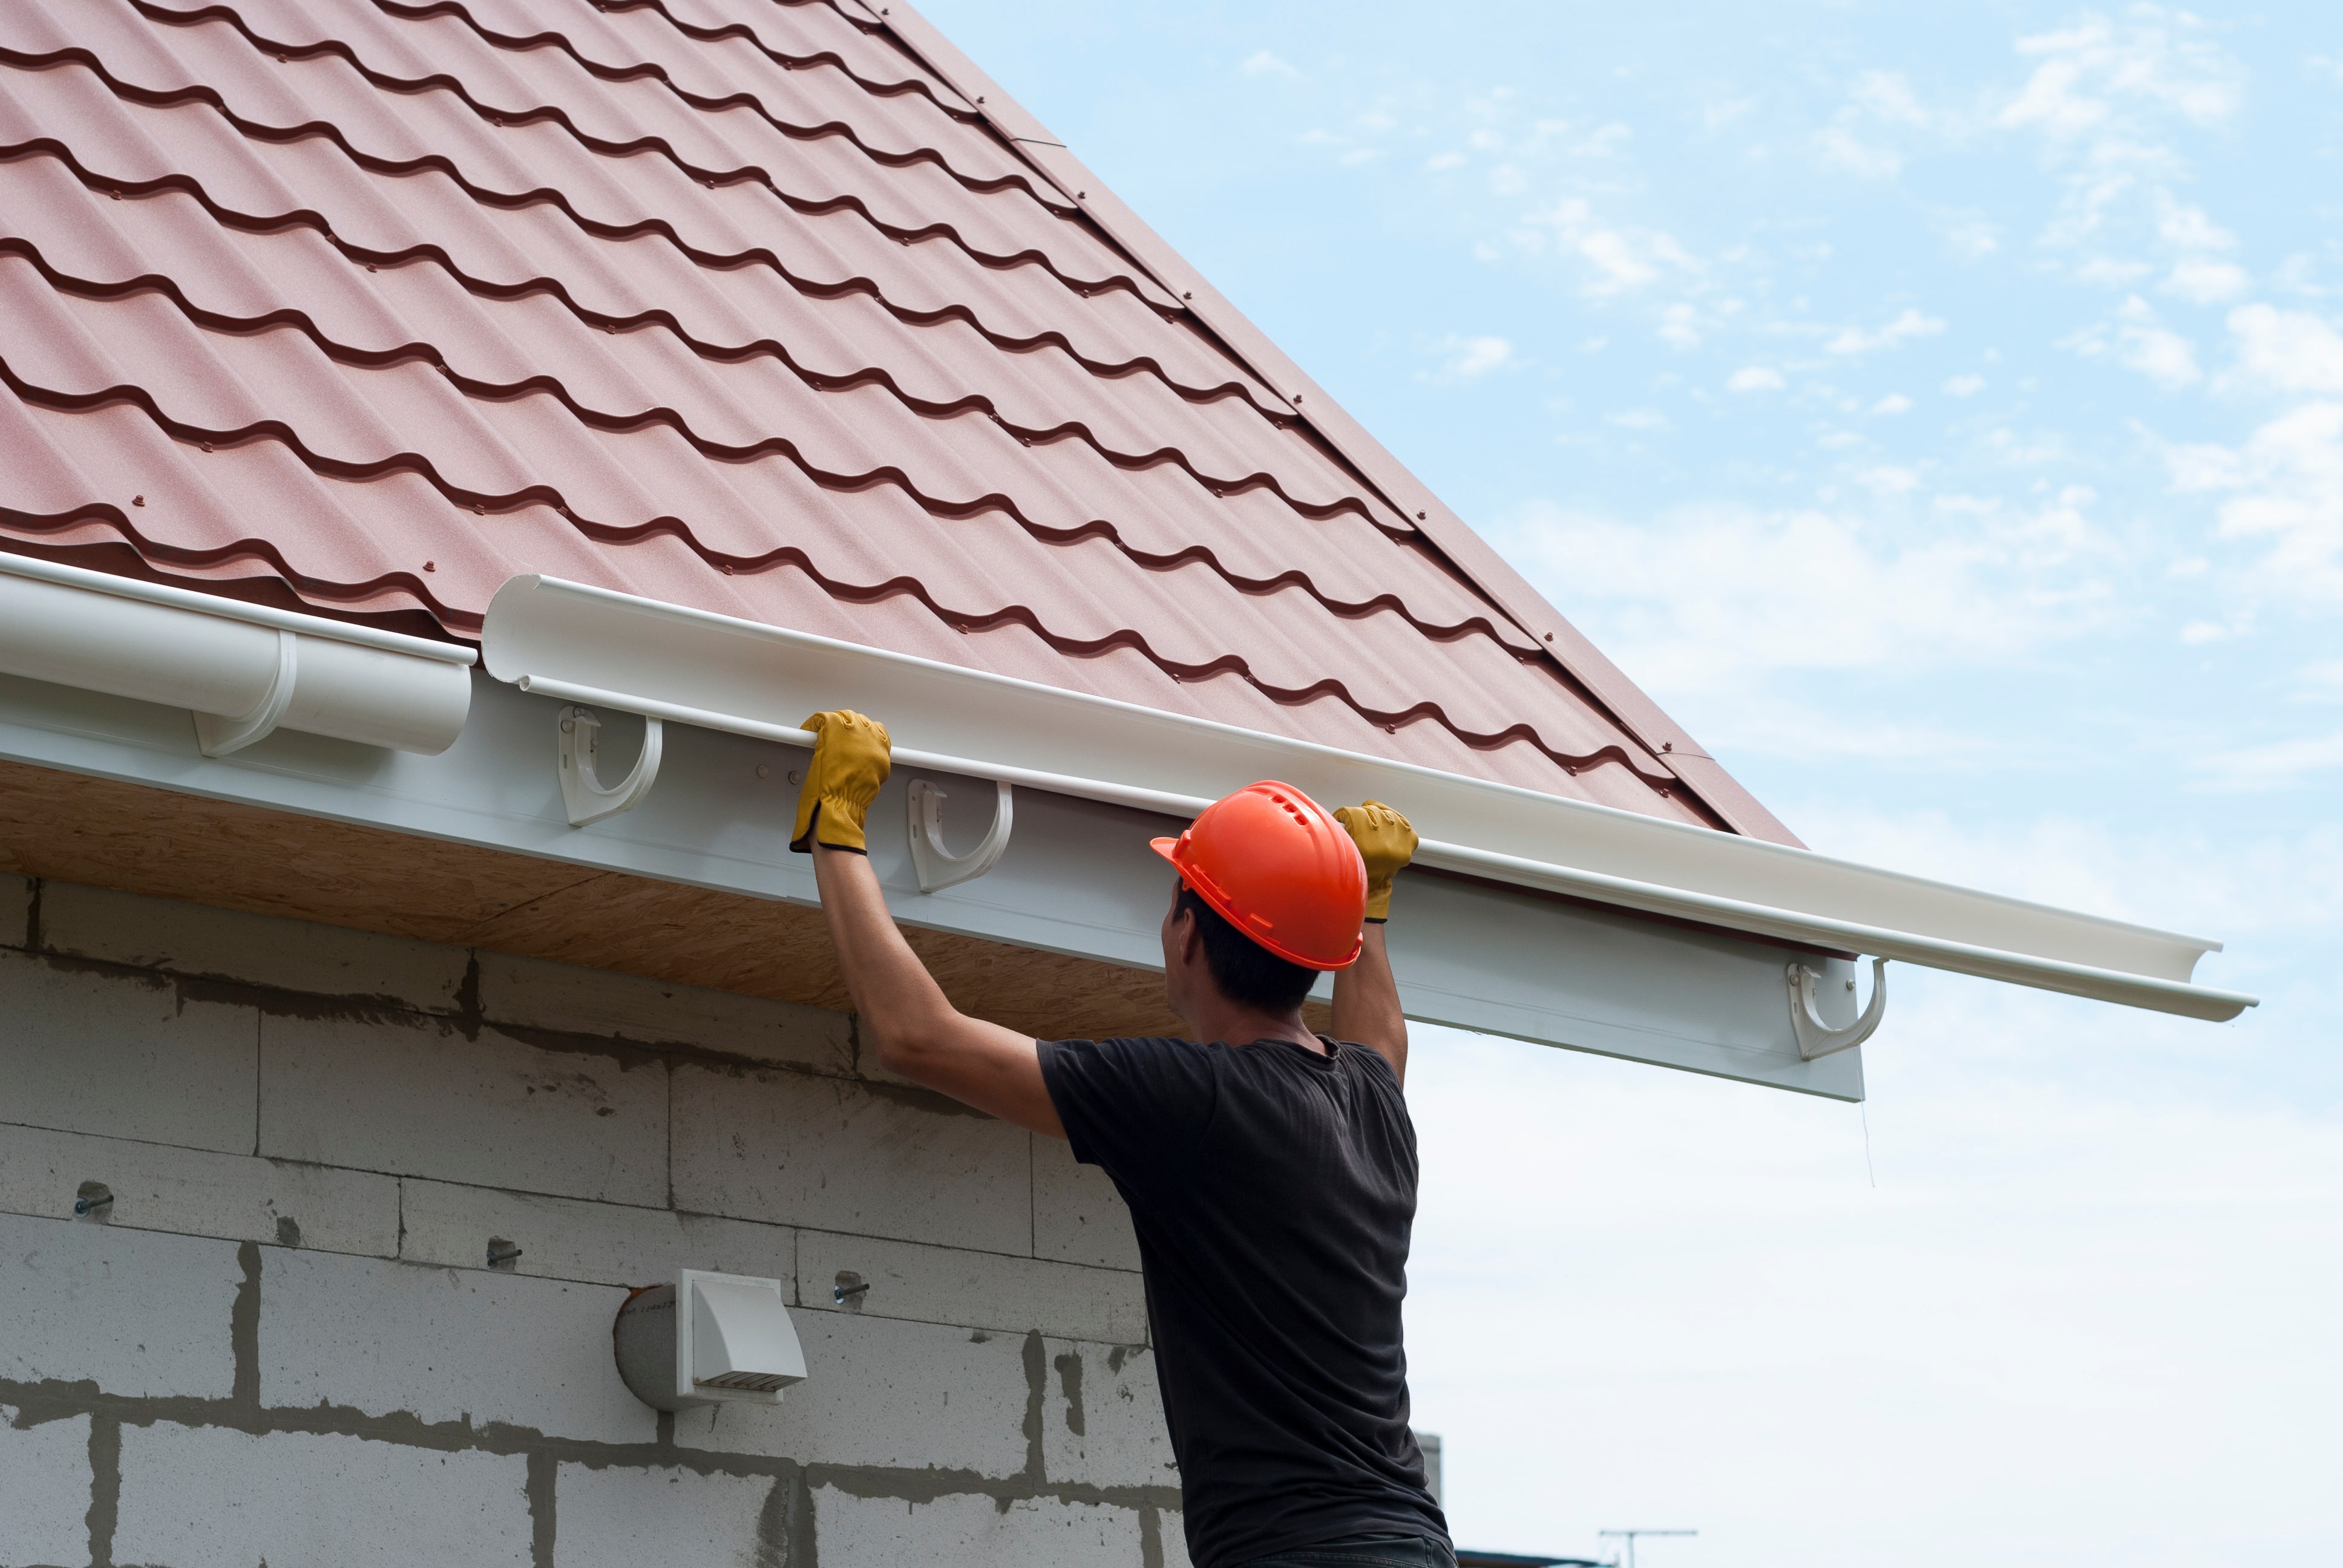 Réparation - entretien de la toiture et des gouttières